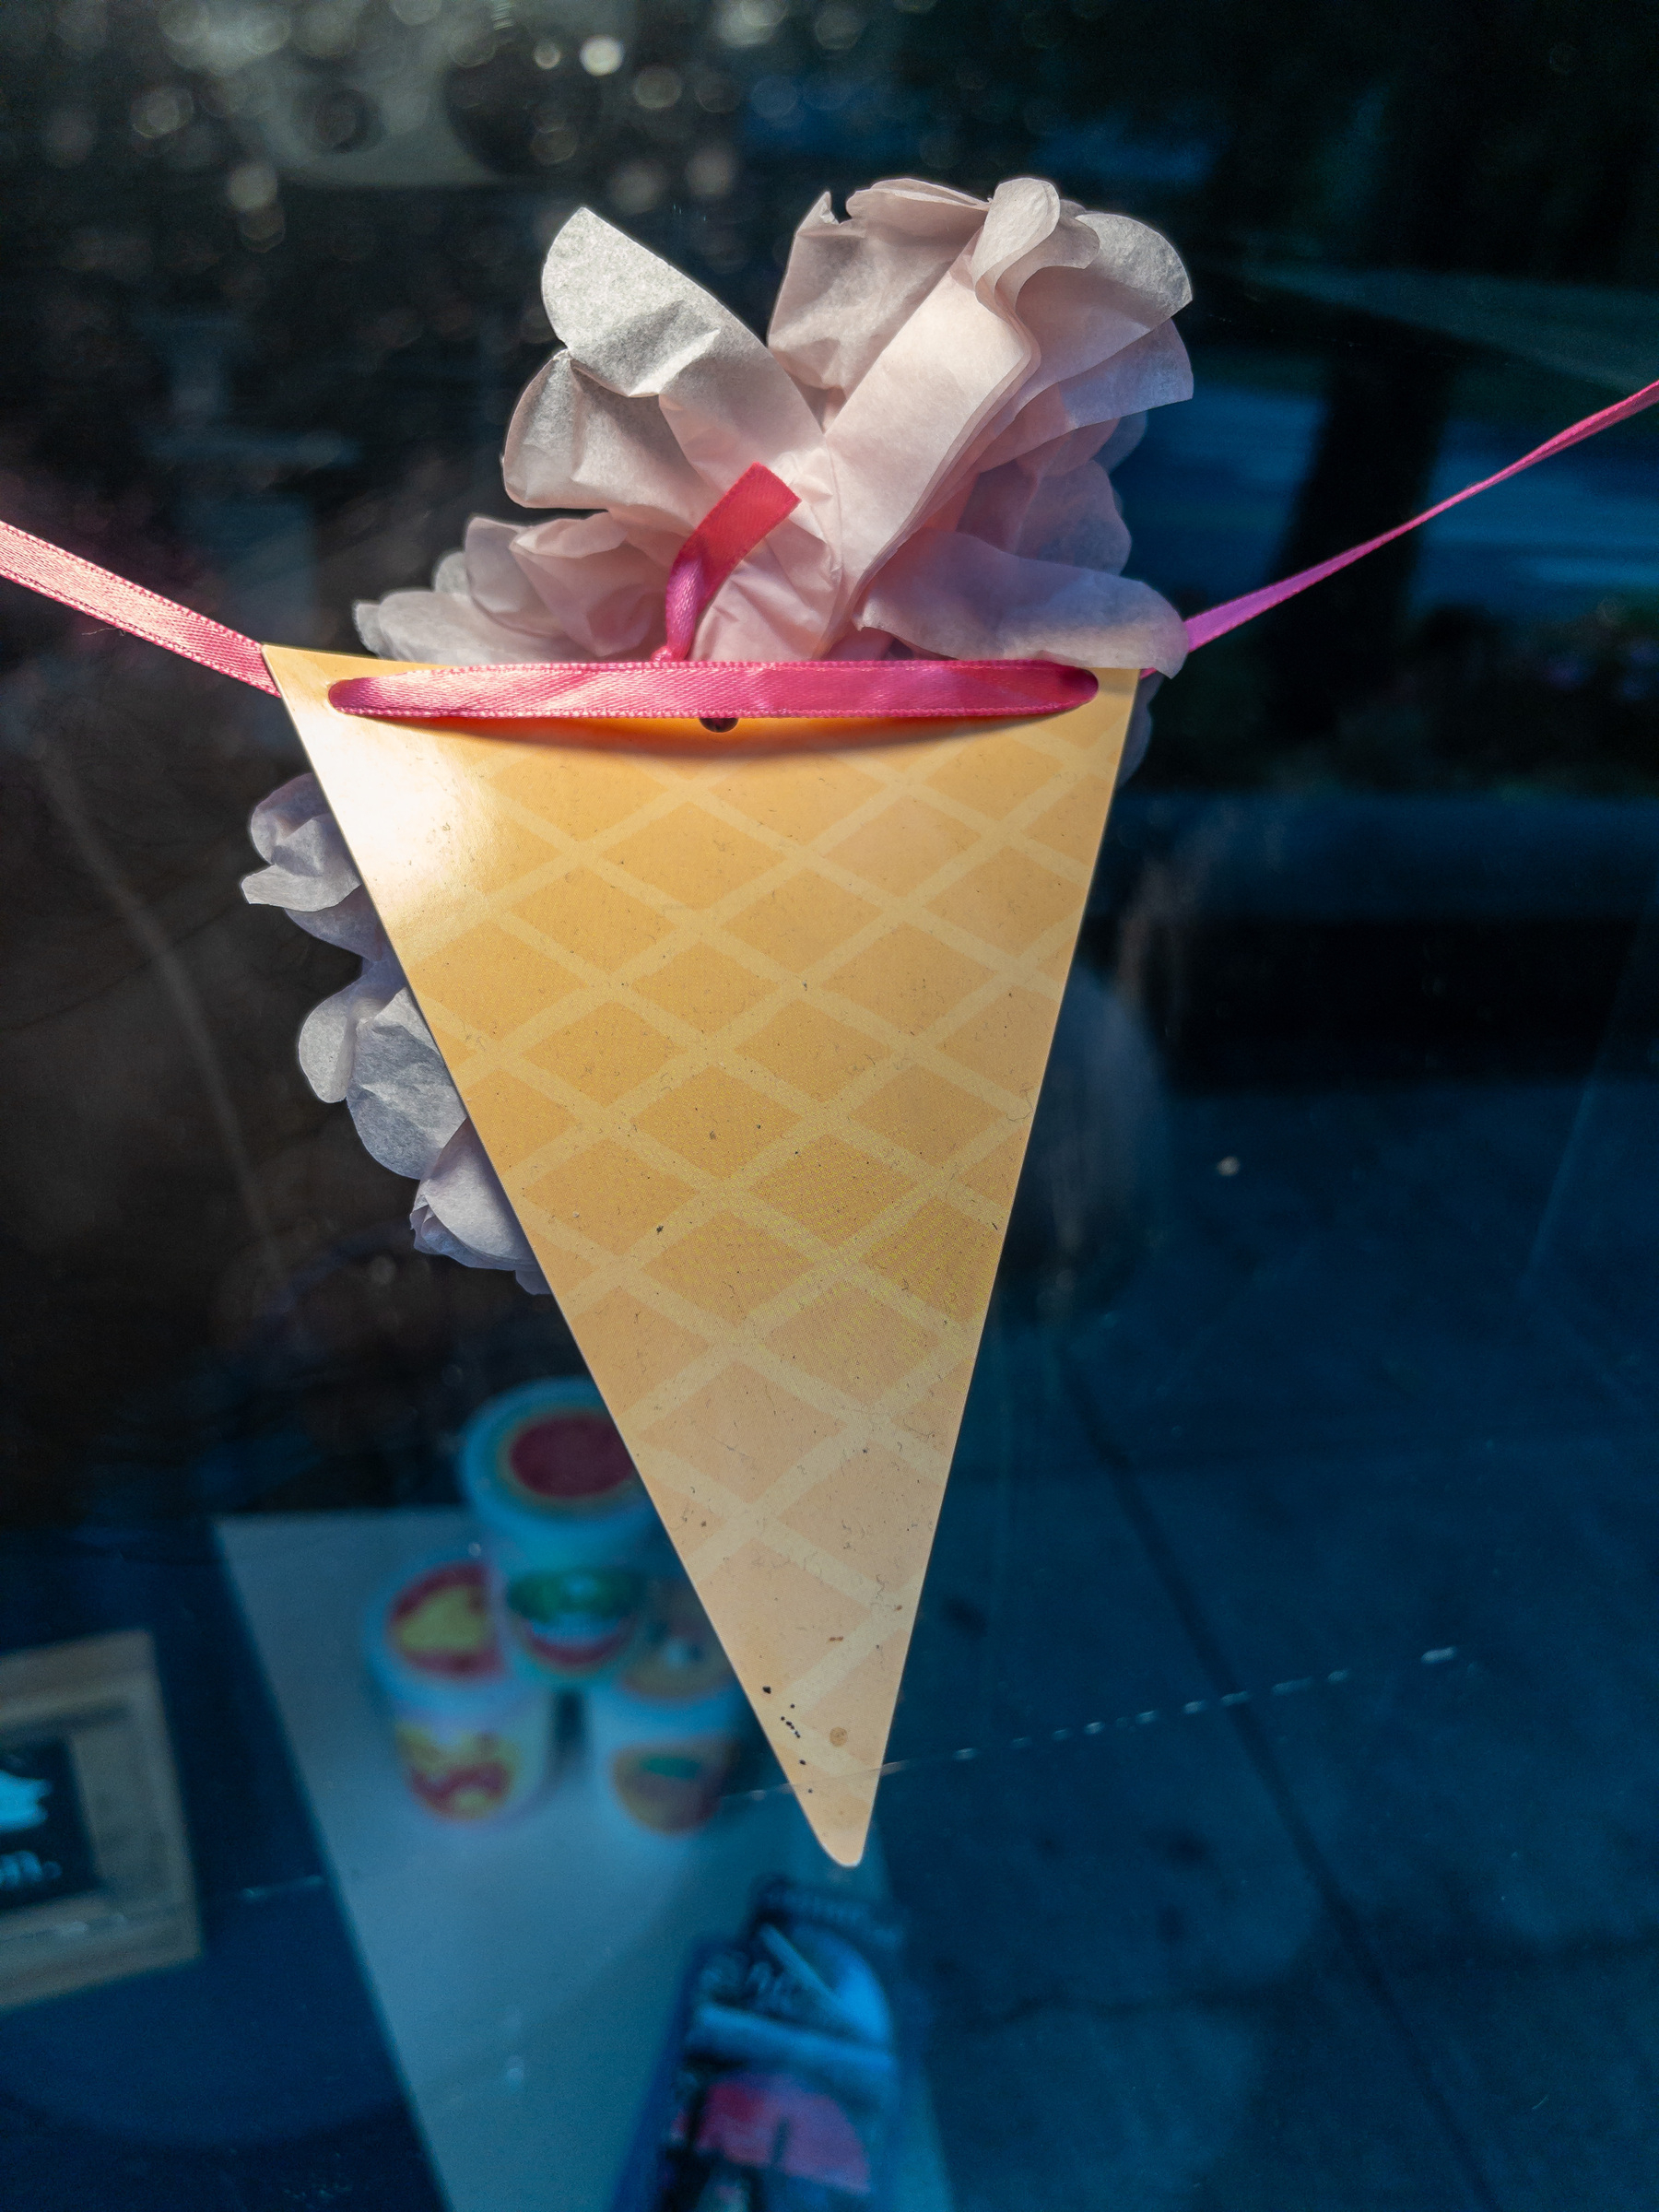 Paper ice cream cone in a shop window.